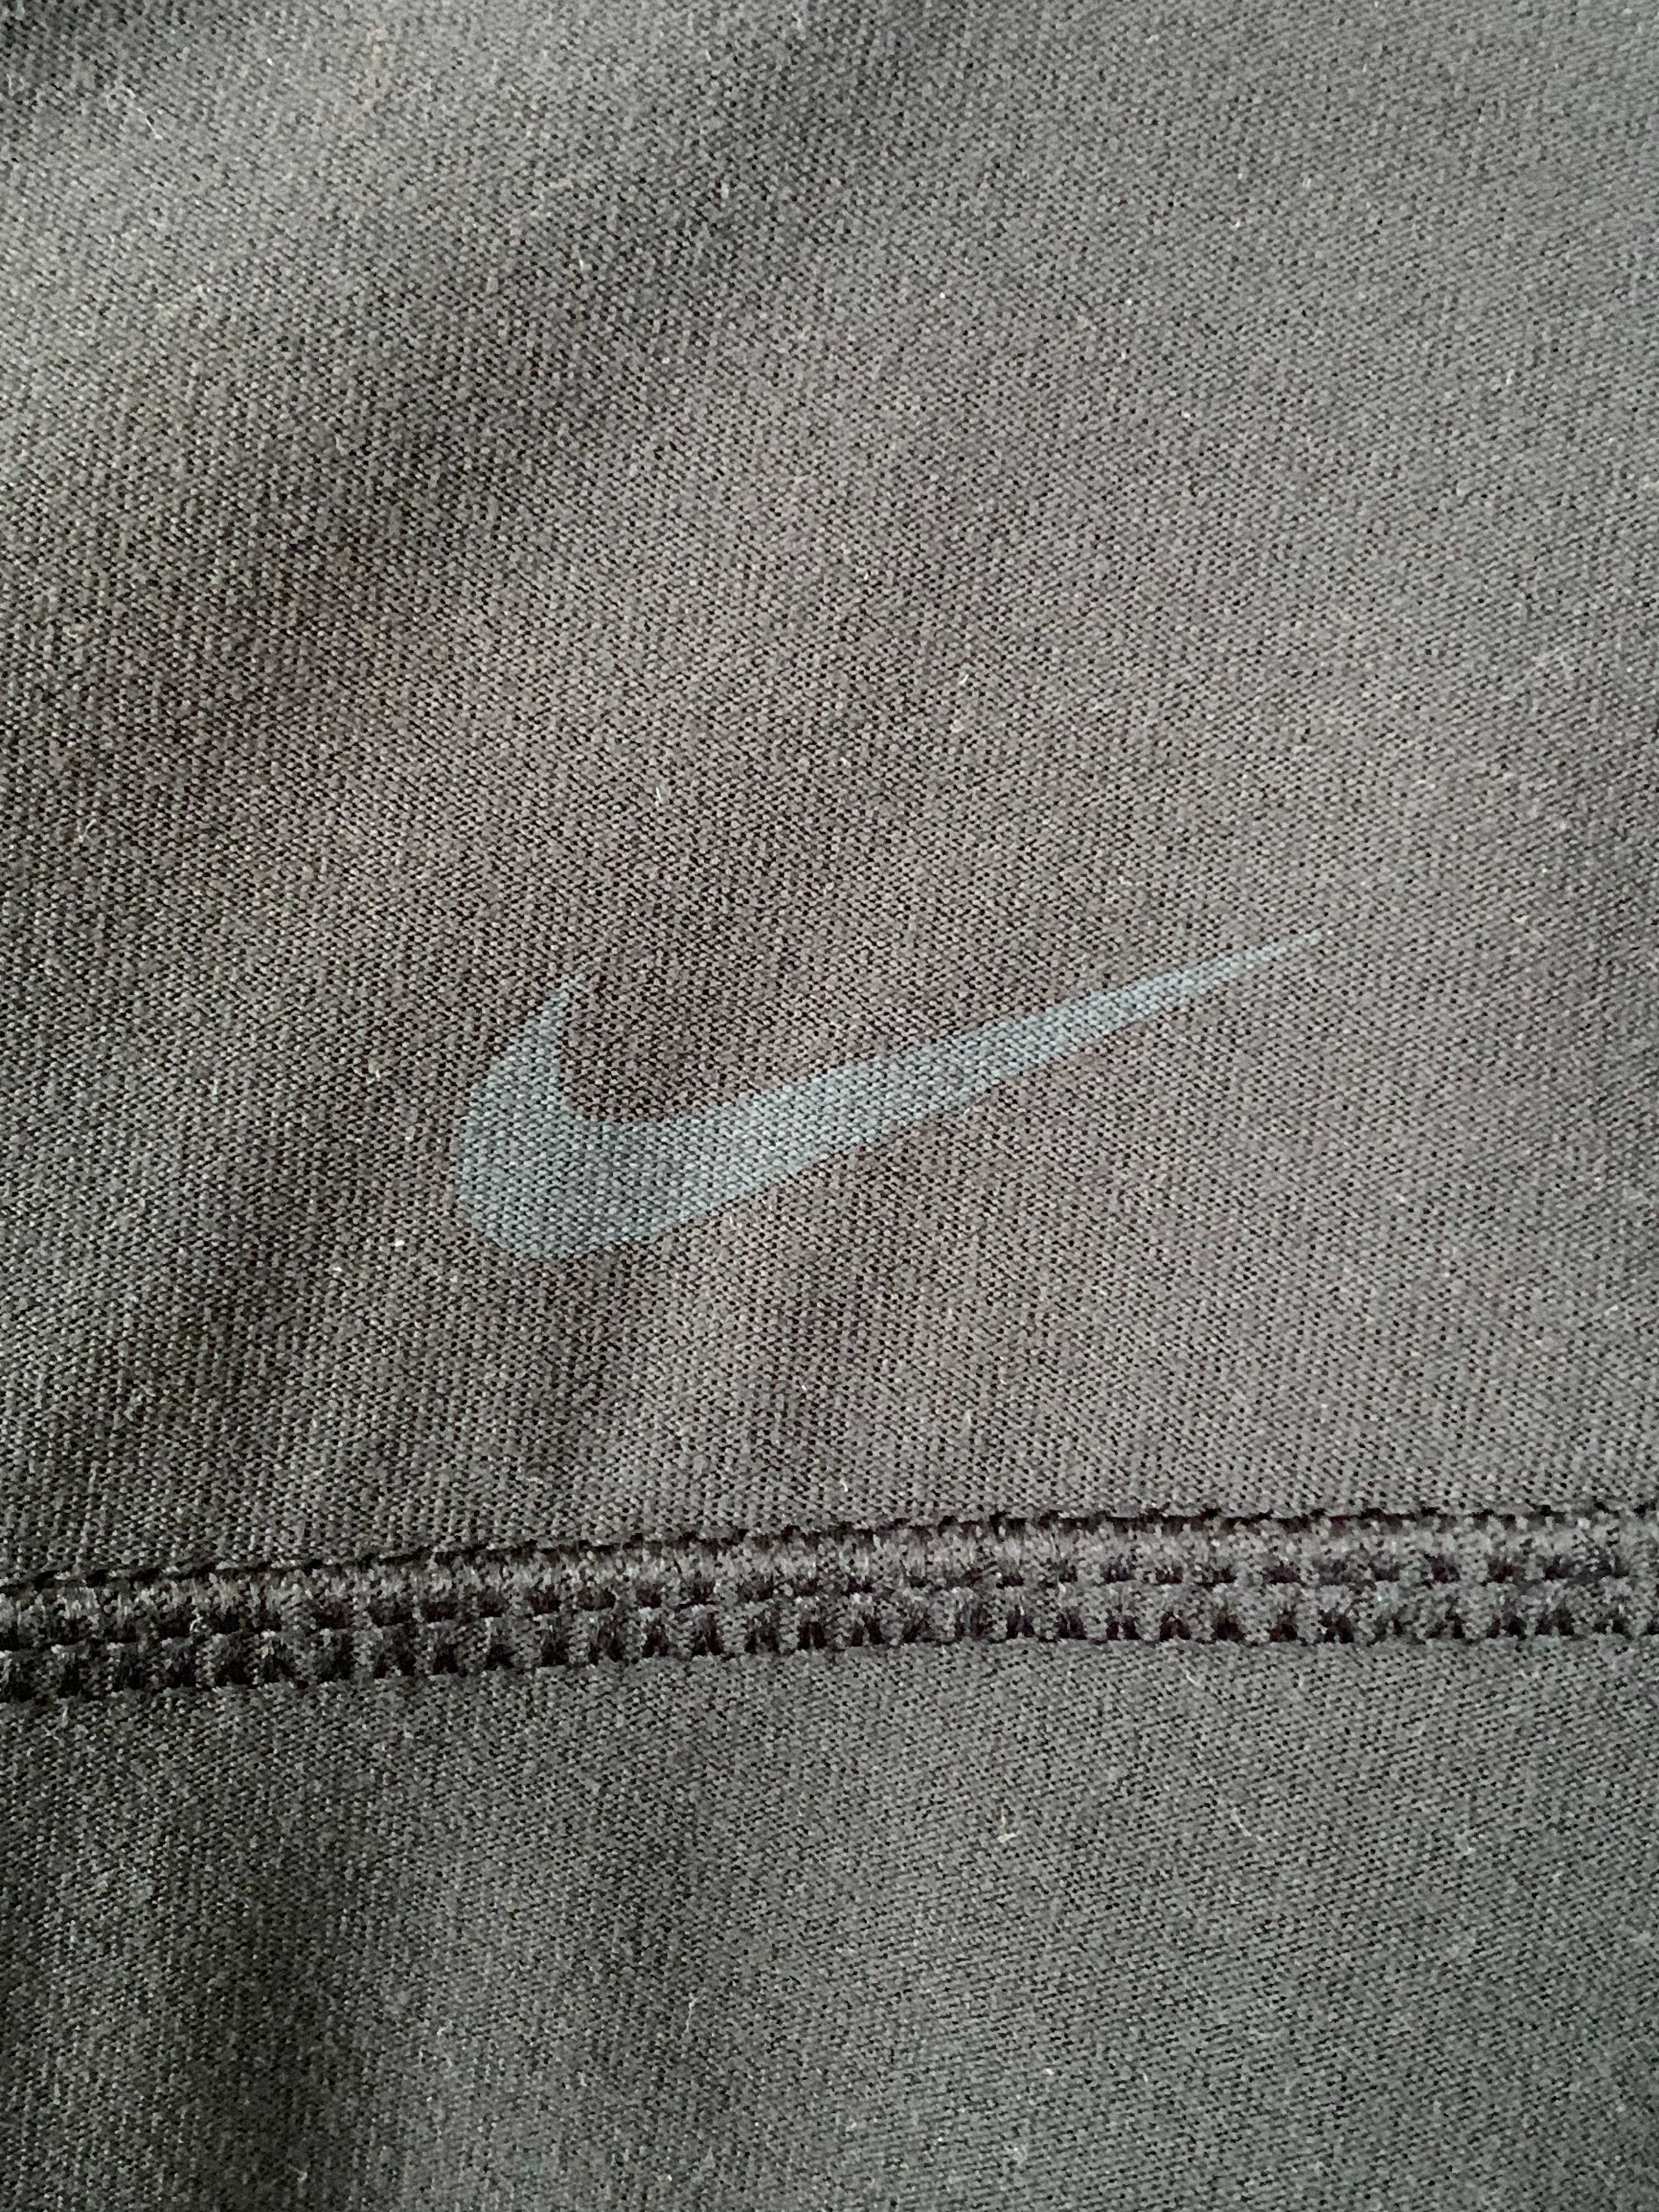 Nike śliczne spodenki L/40